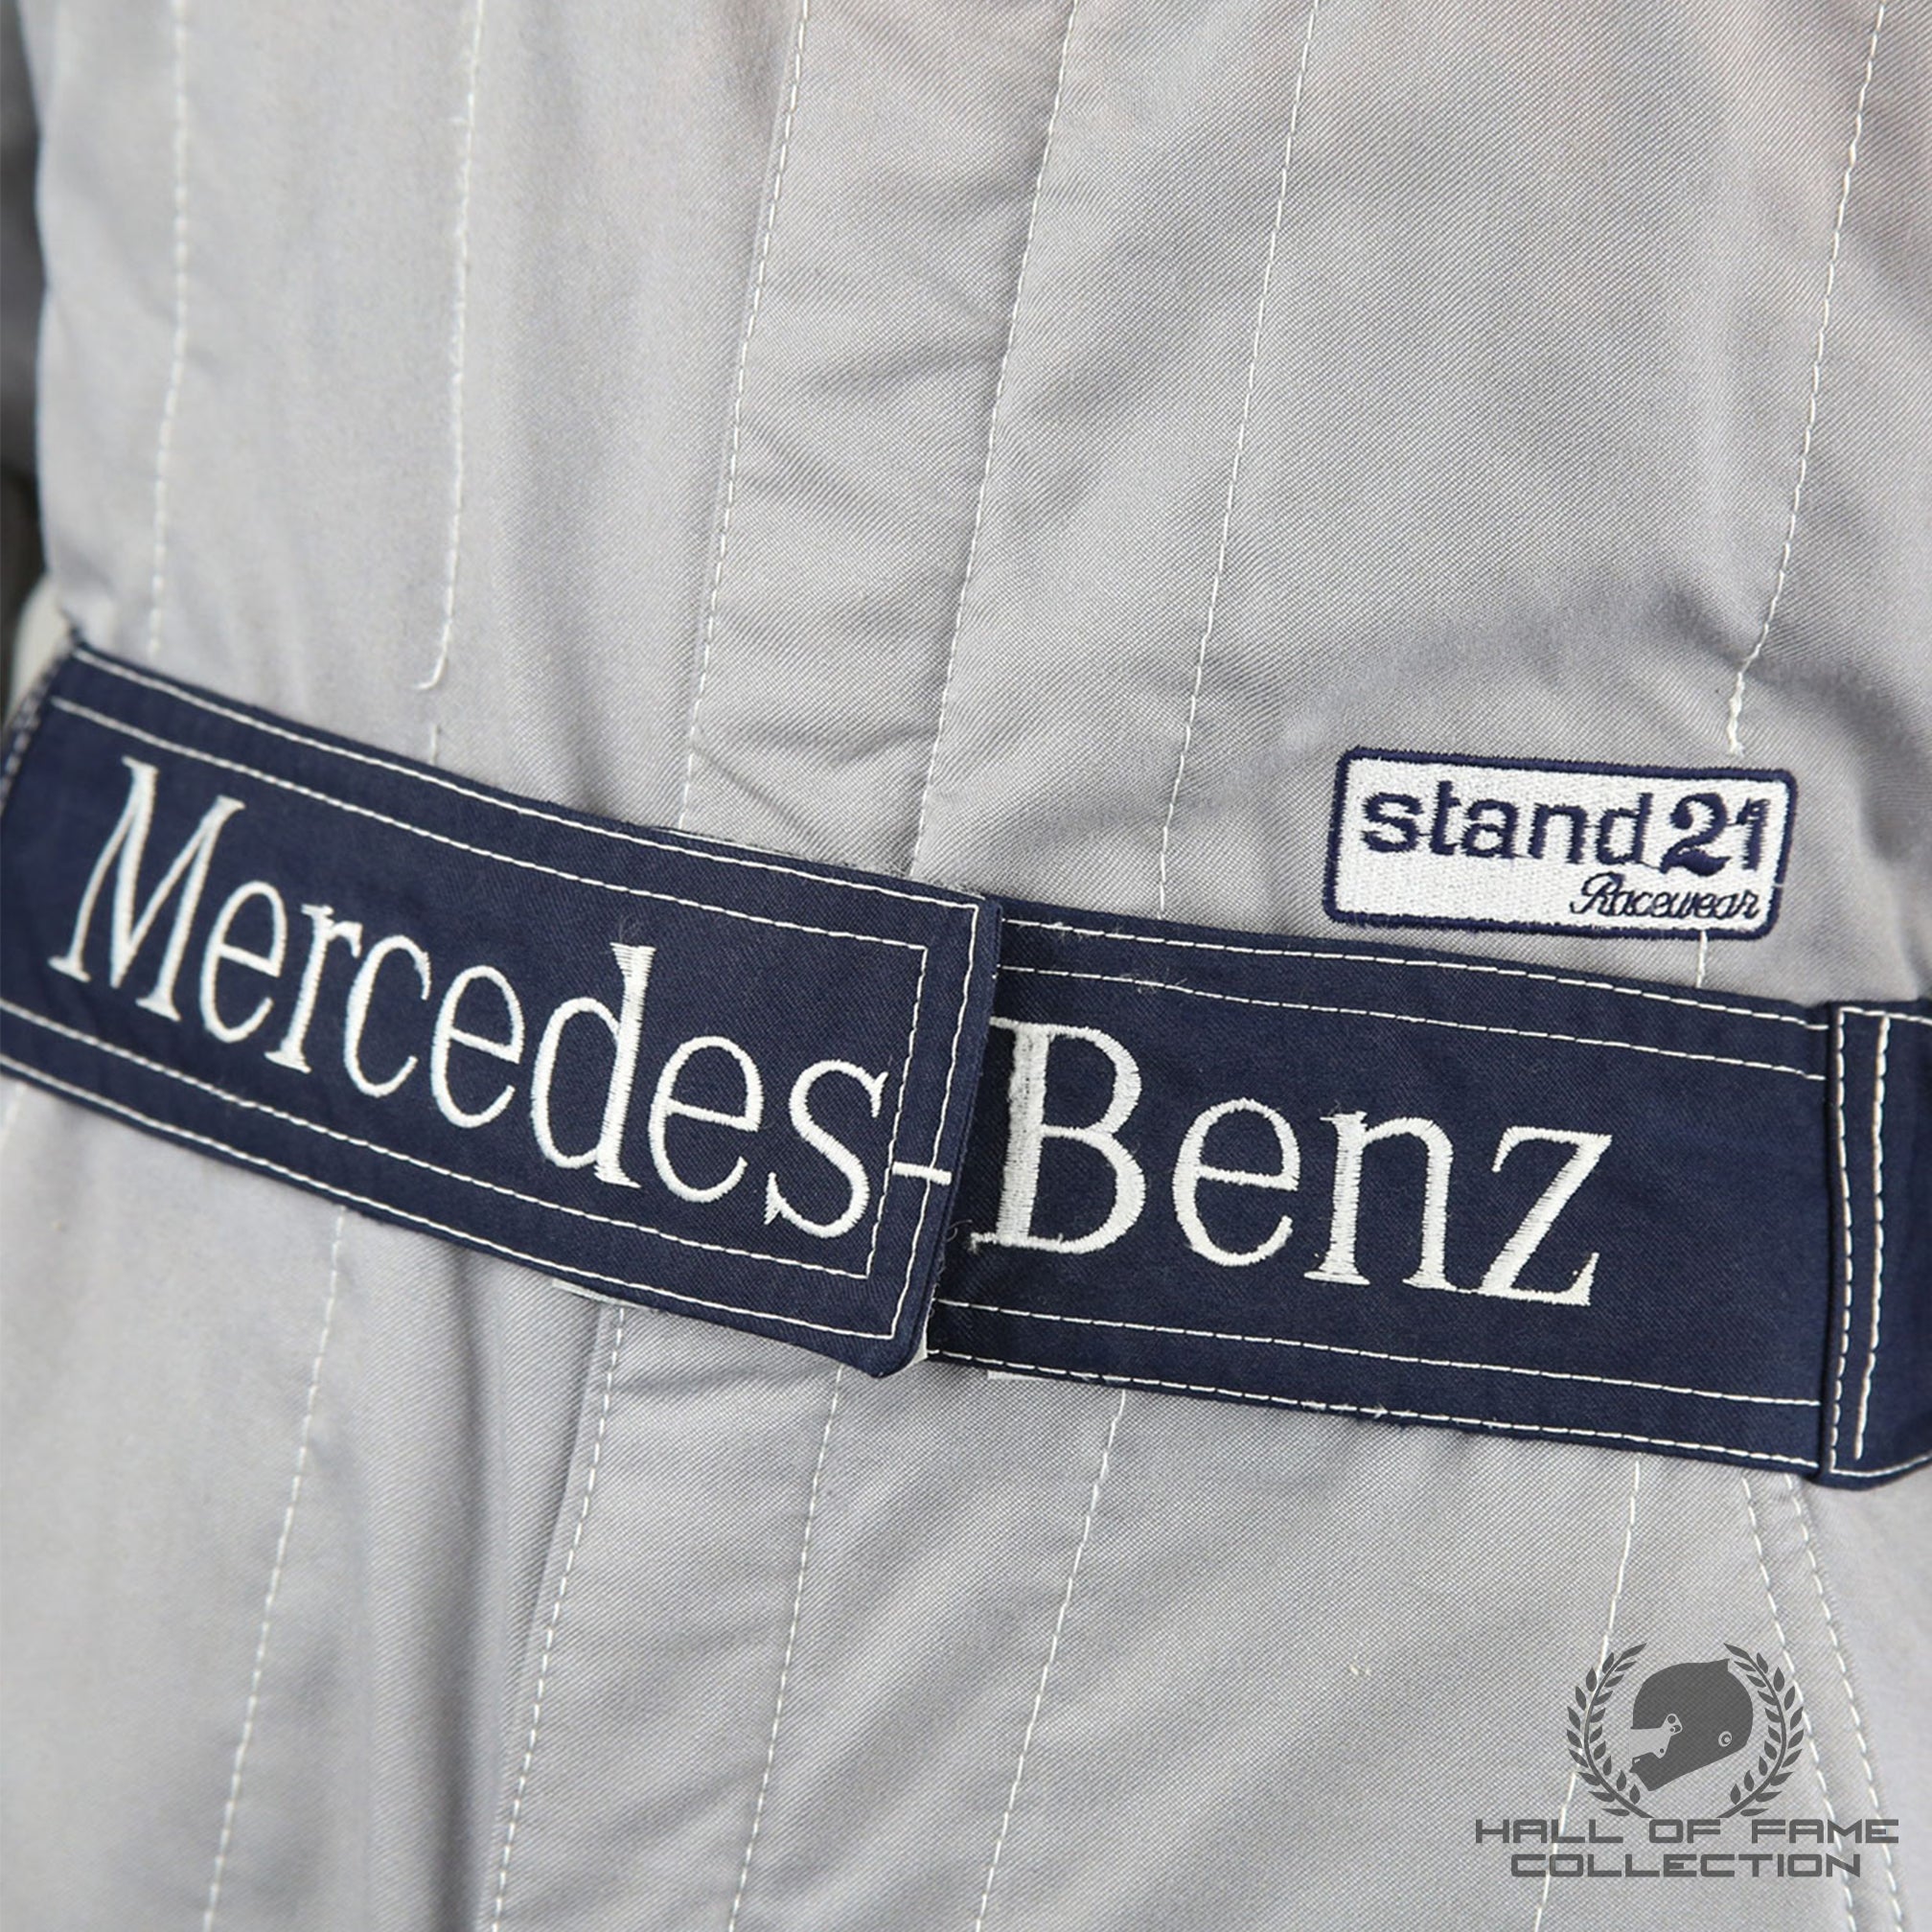 1990 Michael Schumacher Original Mercedes Benz World Sportscar Suit